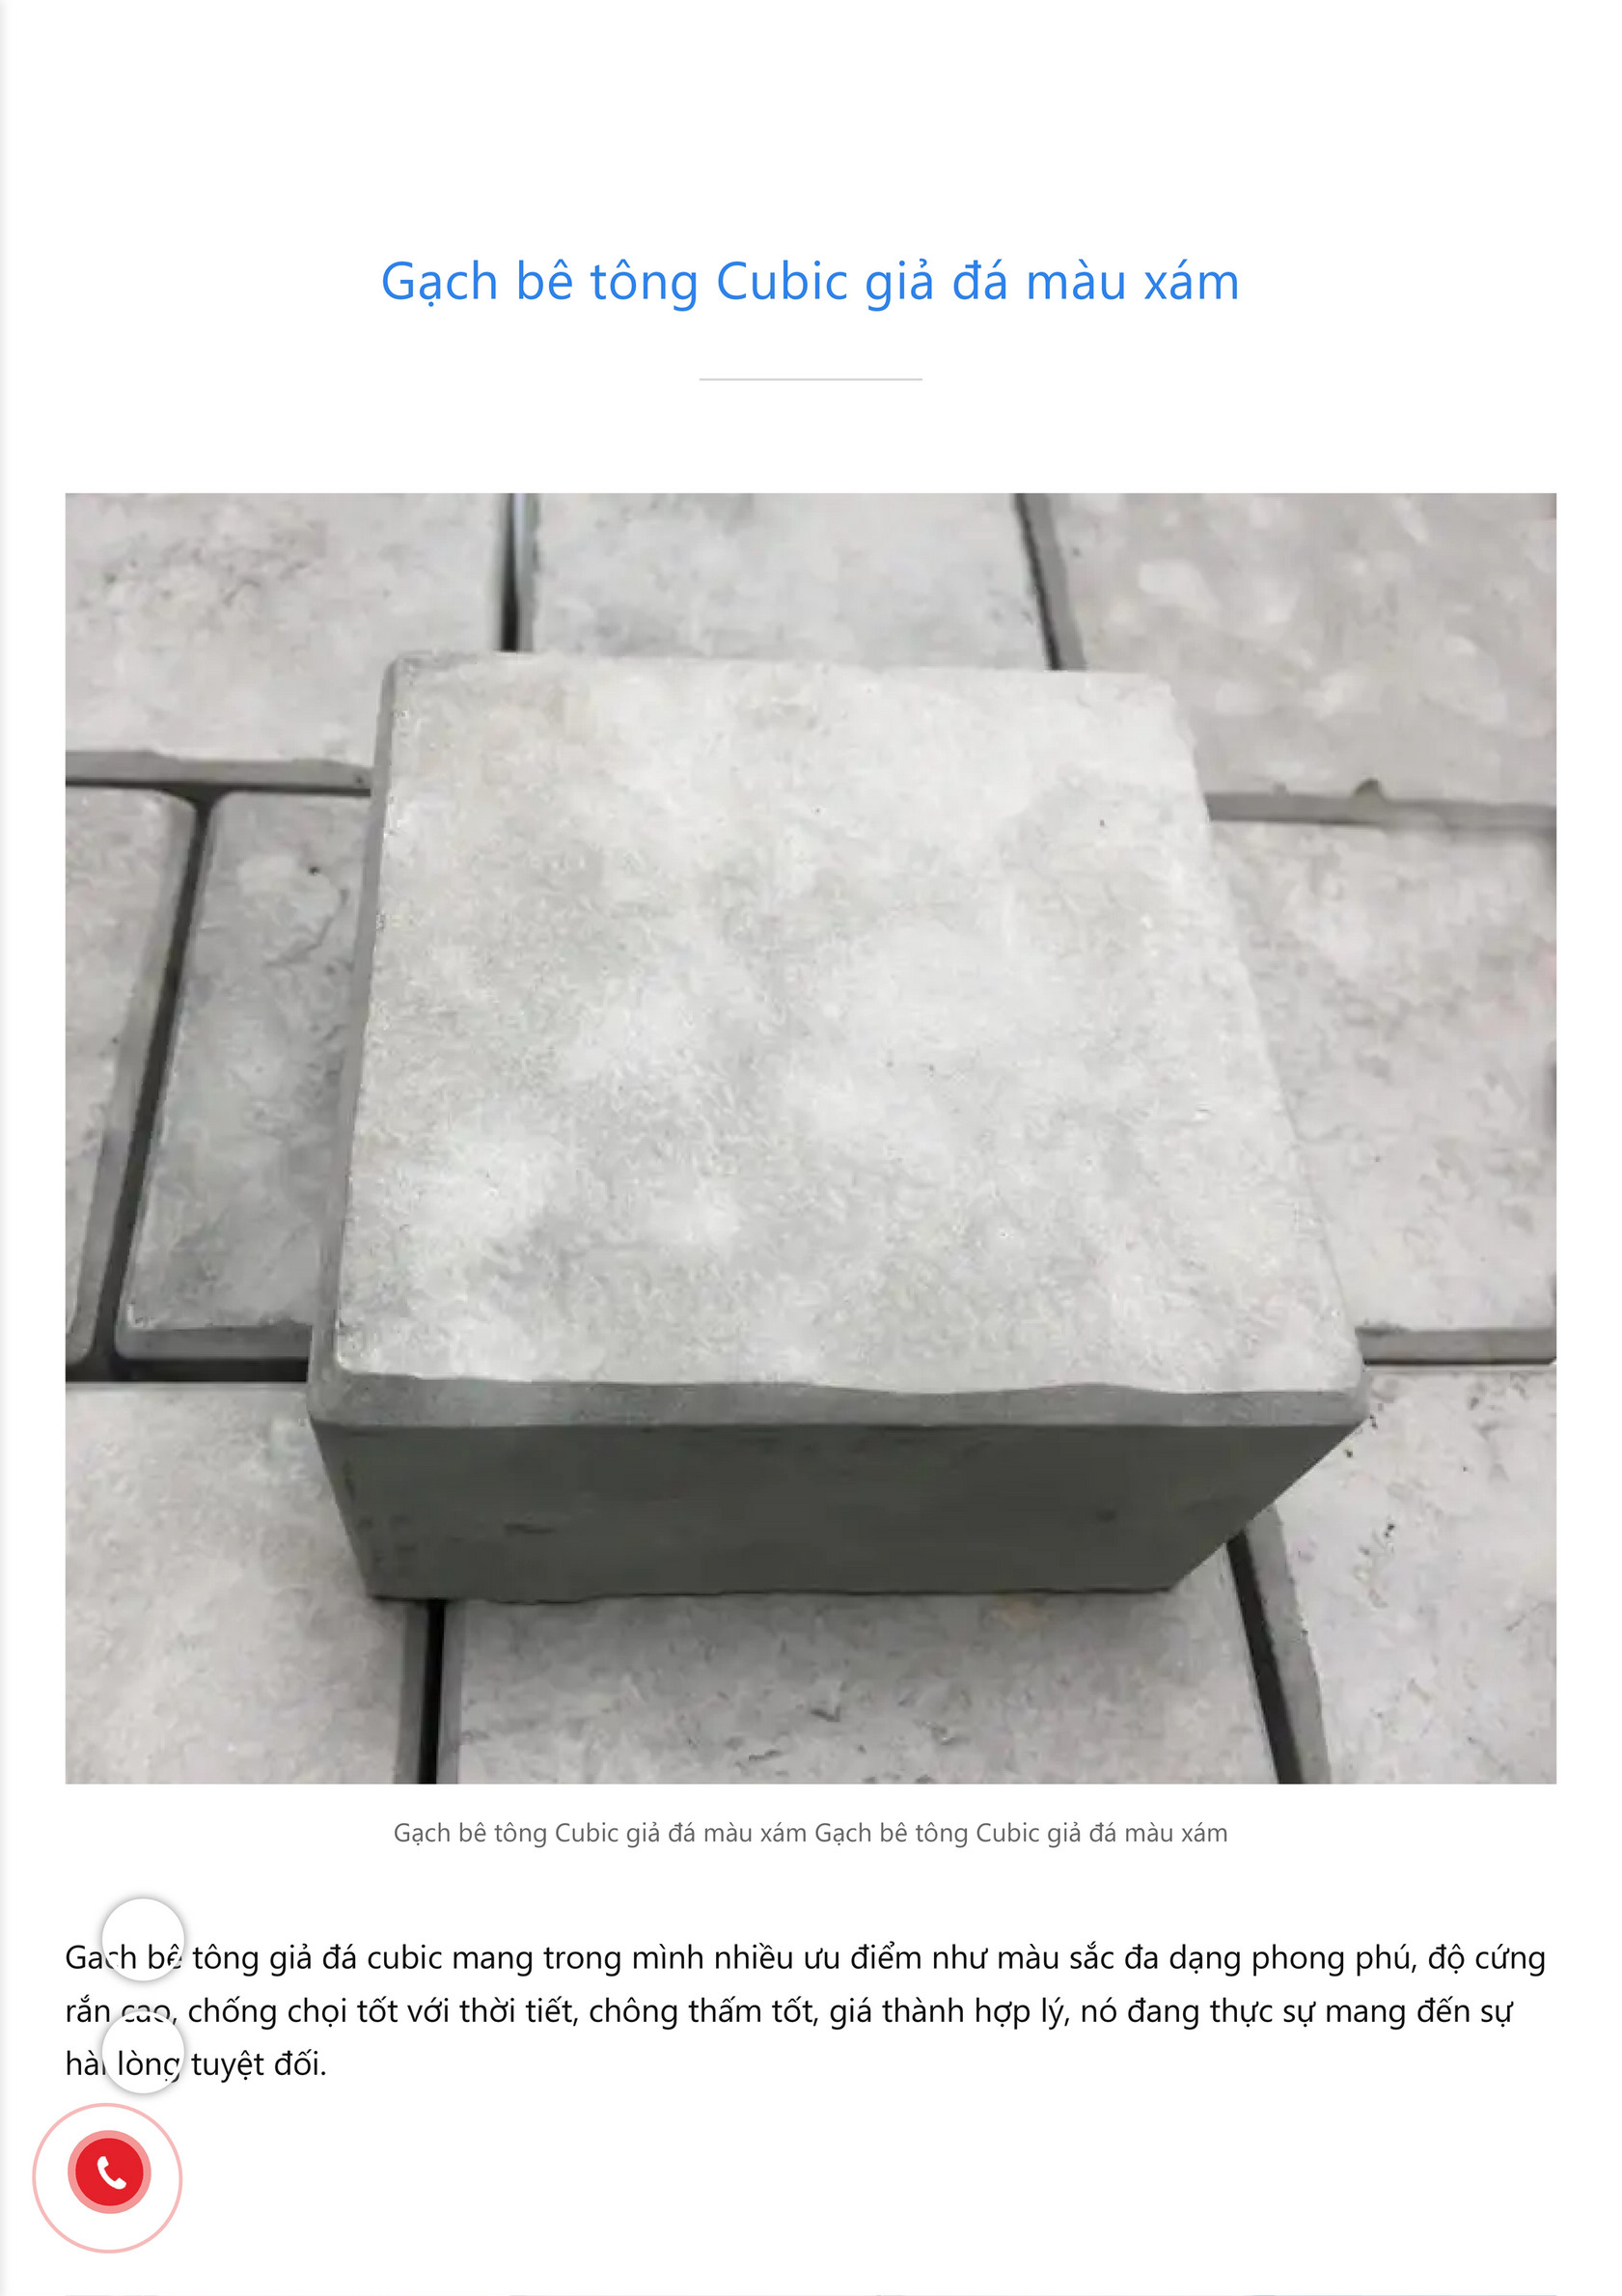 Vietnam cement tile corp - Gạch bê tông Cubic giả đá màu xám. Gọi ...